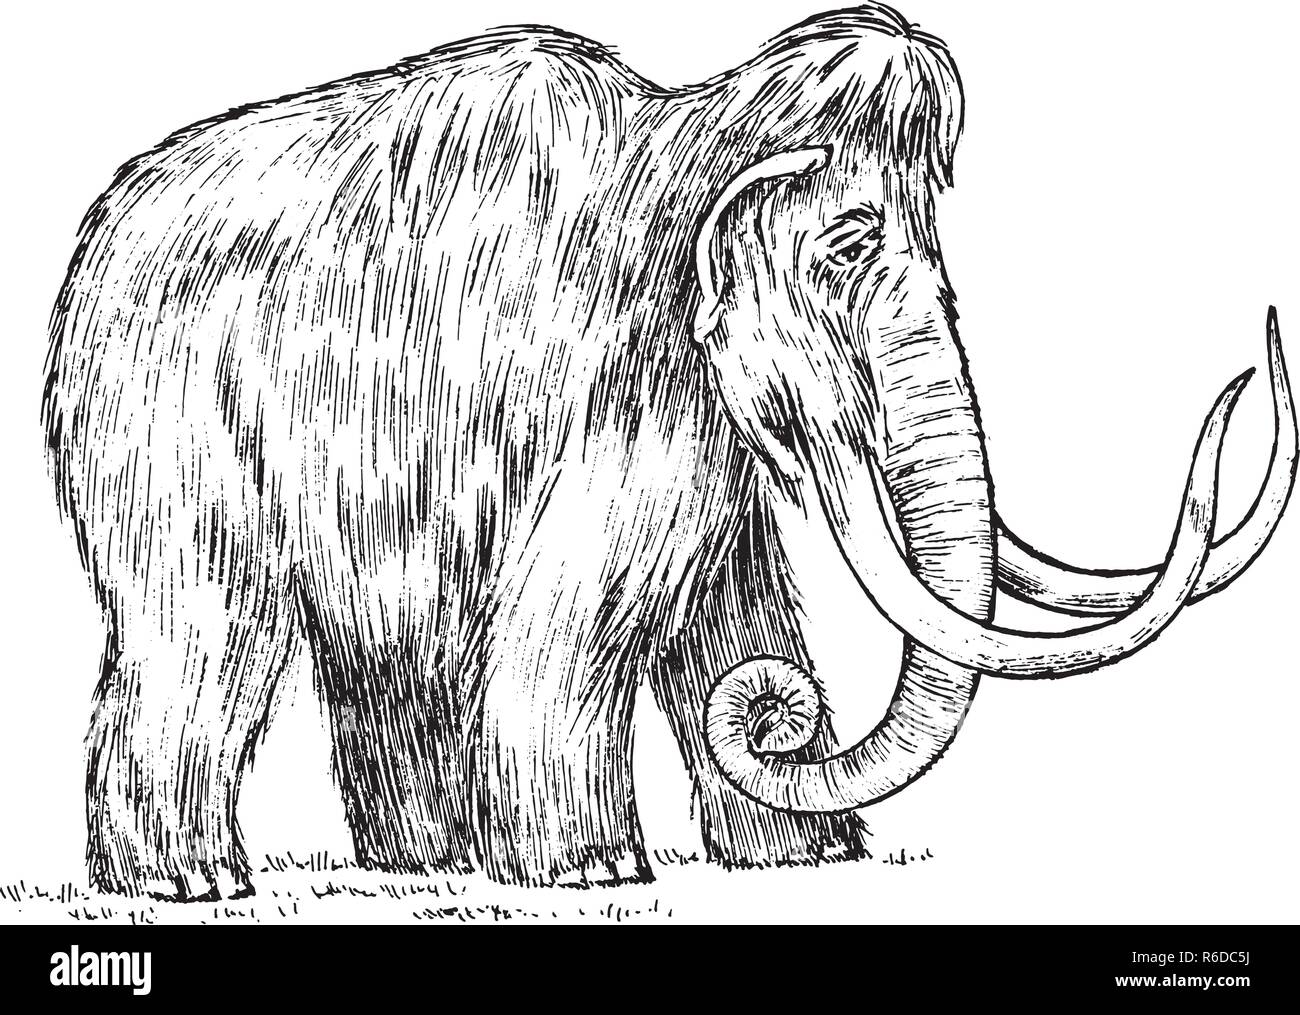 Big mamut. Animal extinto. Los antepasados de los elefantes. Estilo Vintage. Grabado croquis dibujados a mano. Ilustración vectorial Ilustración del Vector